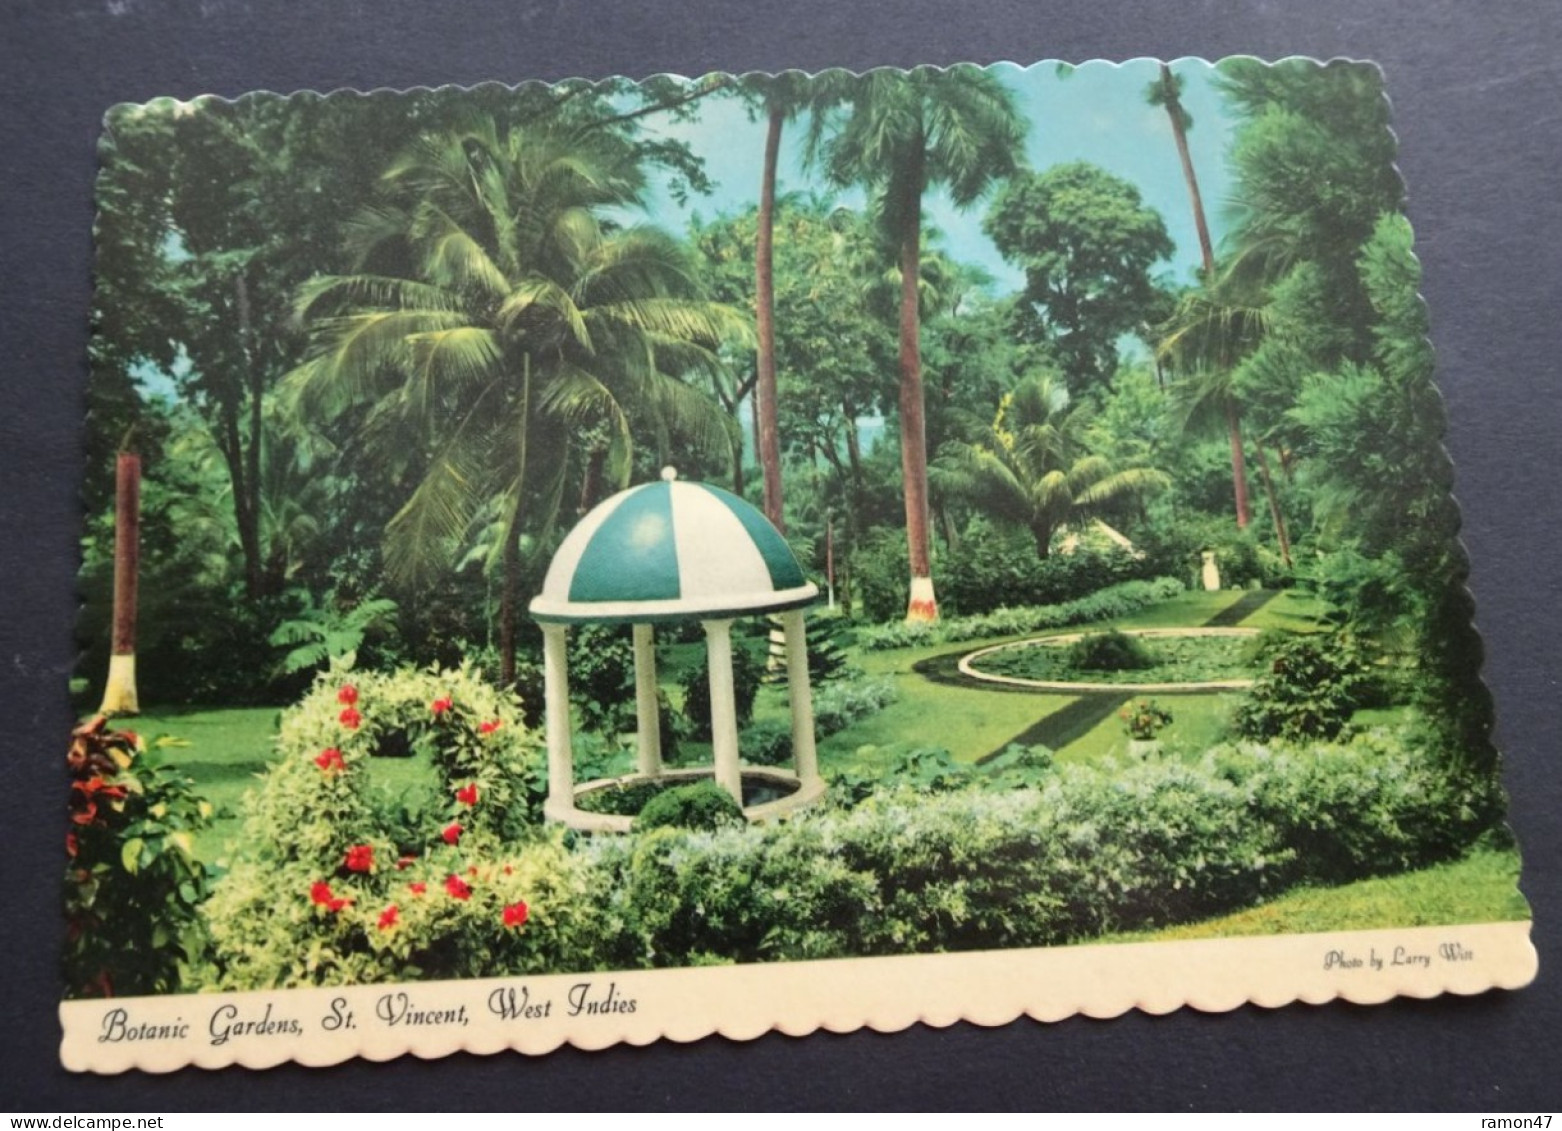 St. Vincent - Botanic Gardens - Photo Larry Witt - Dexter Press - Publisher Reliance Printery, St. Vincent, # DT-53655-C - Saint Vincent &  The Grenadines